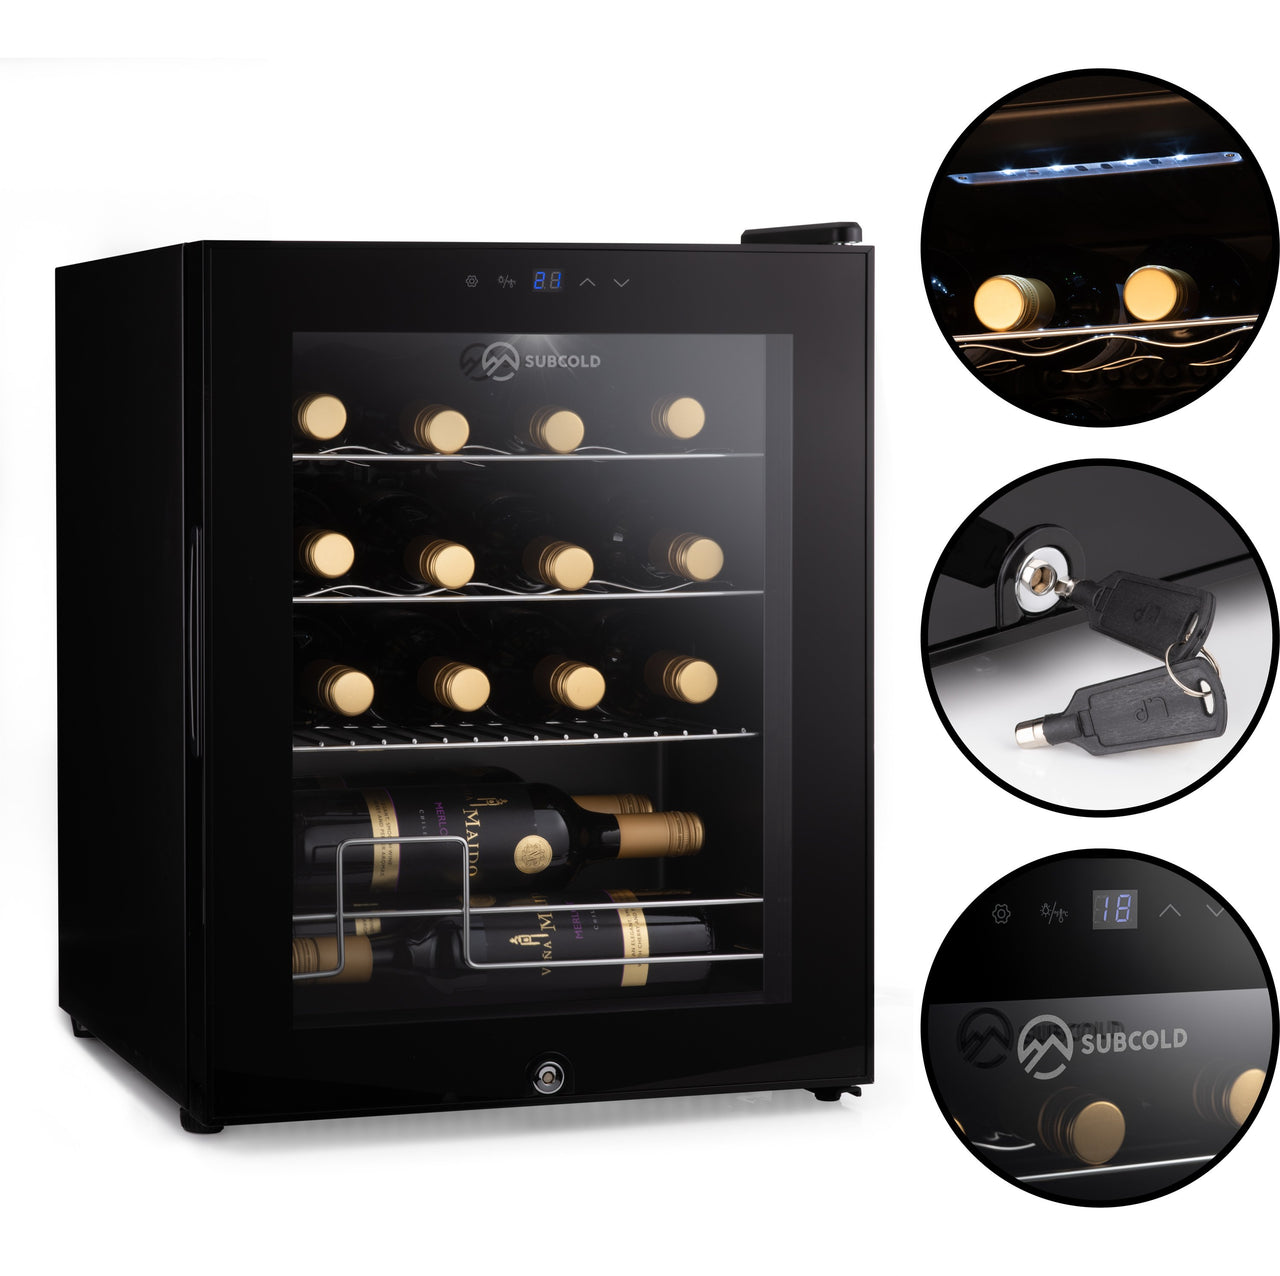 Subcold Viva 16 bottles wine cooler fridge (48 litre) features